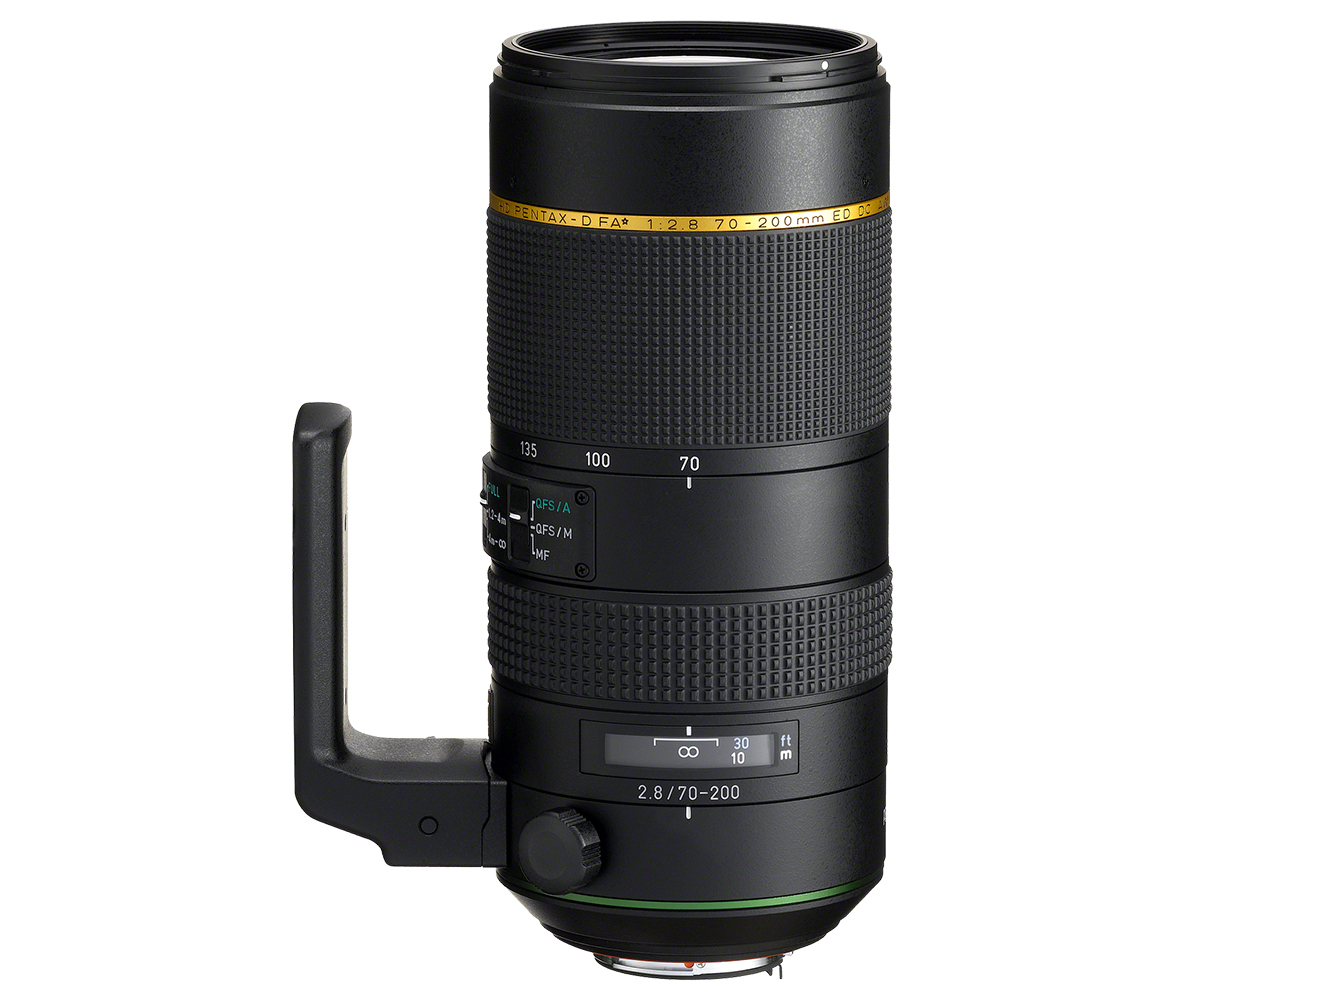 Pentax announced a full-frame capable 70-200mm lens.